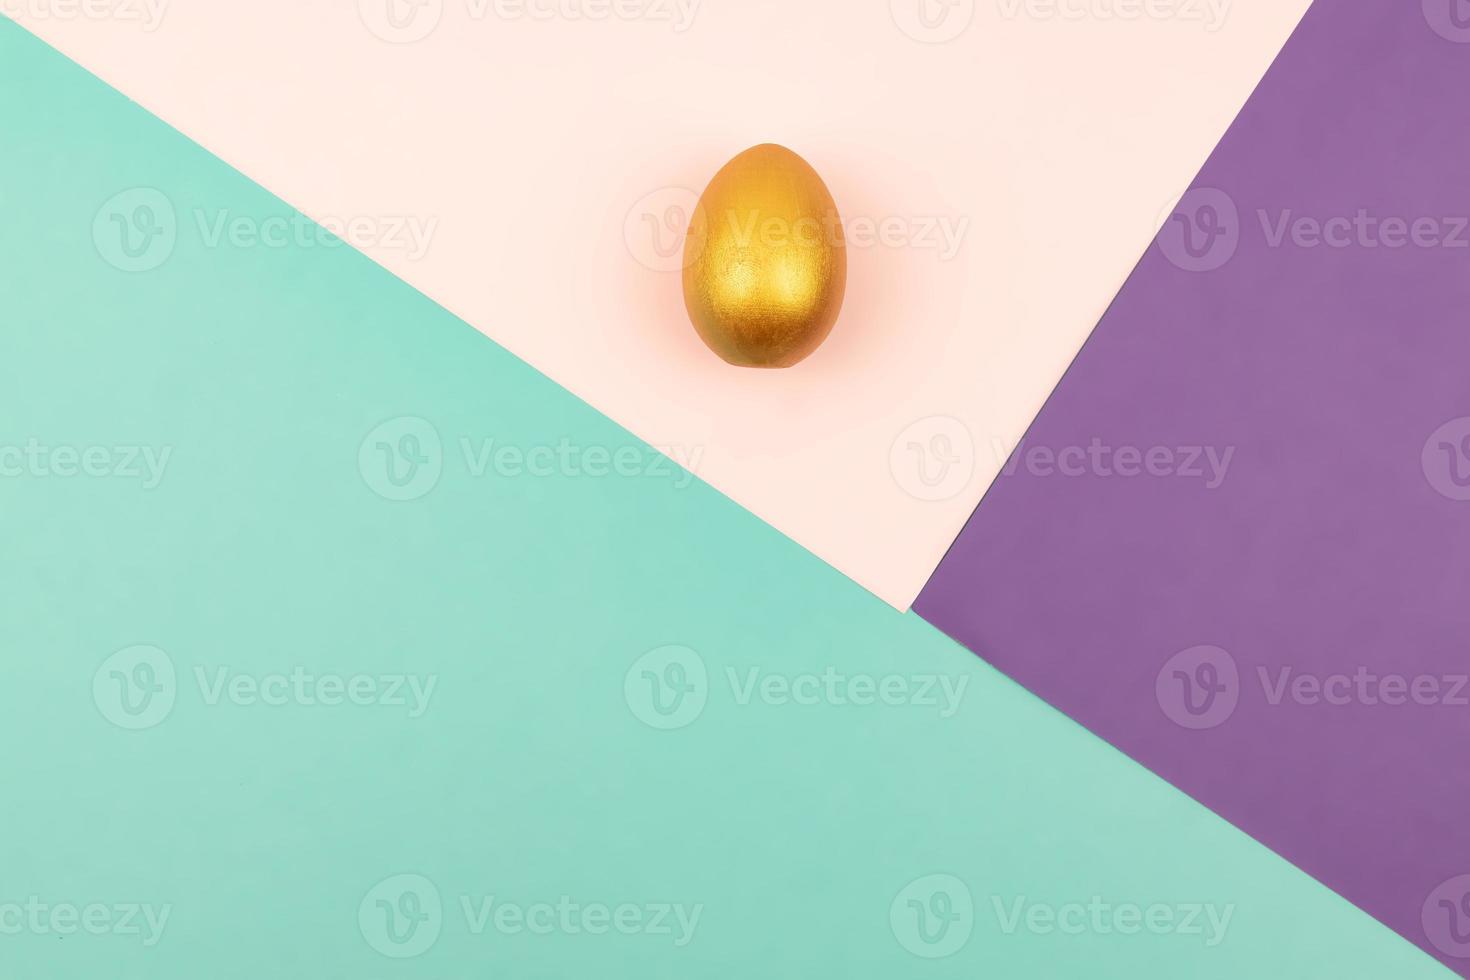 fond de papier géométrique abstrait de couleurs pastel rose et violet avec oeuf de pâques doré. espace de copie pour la conception photo